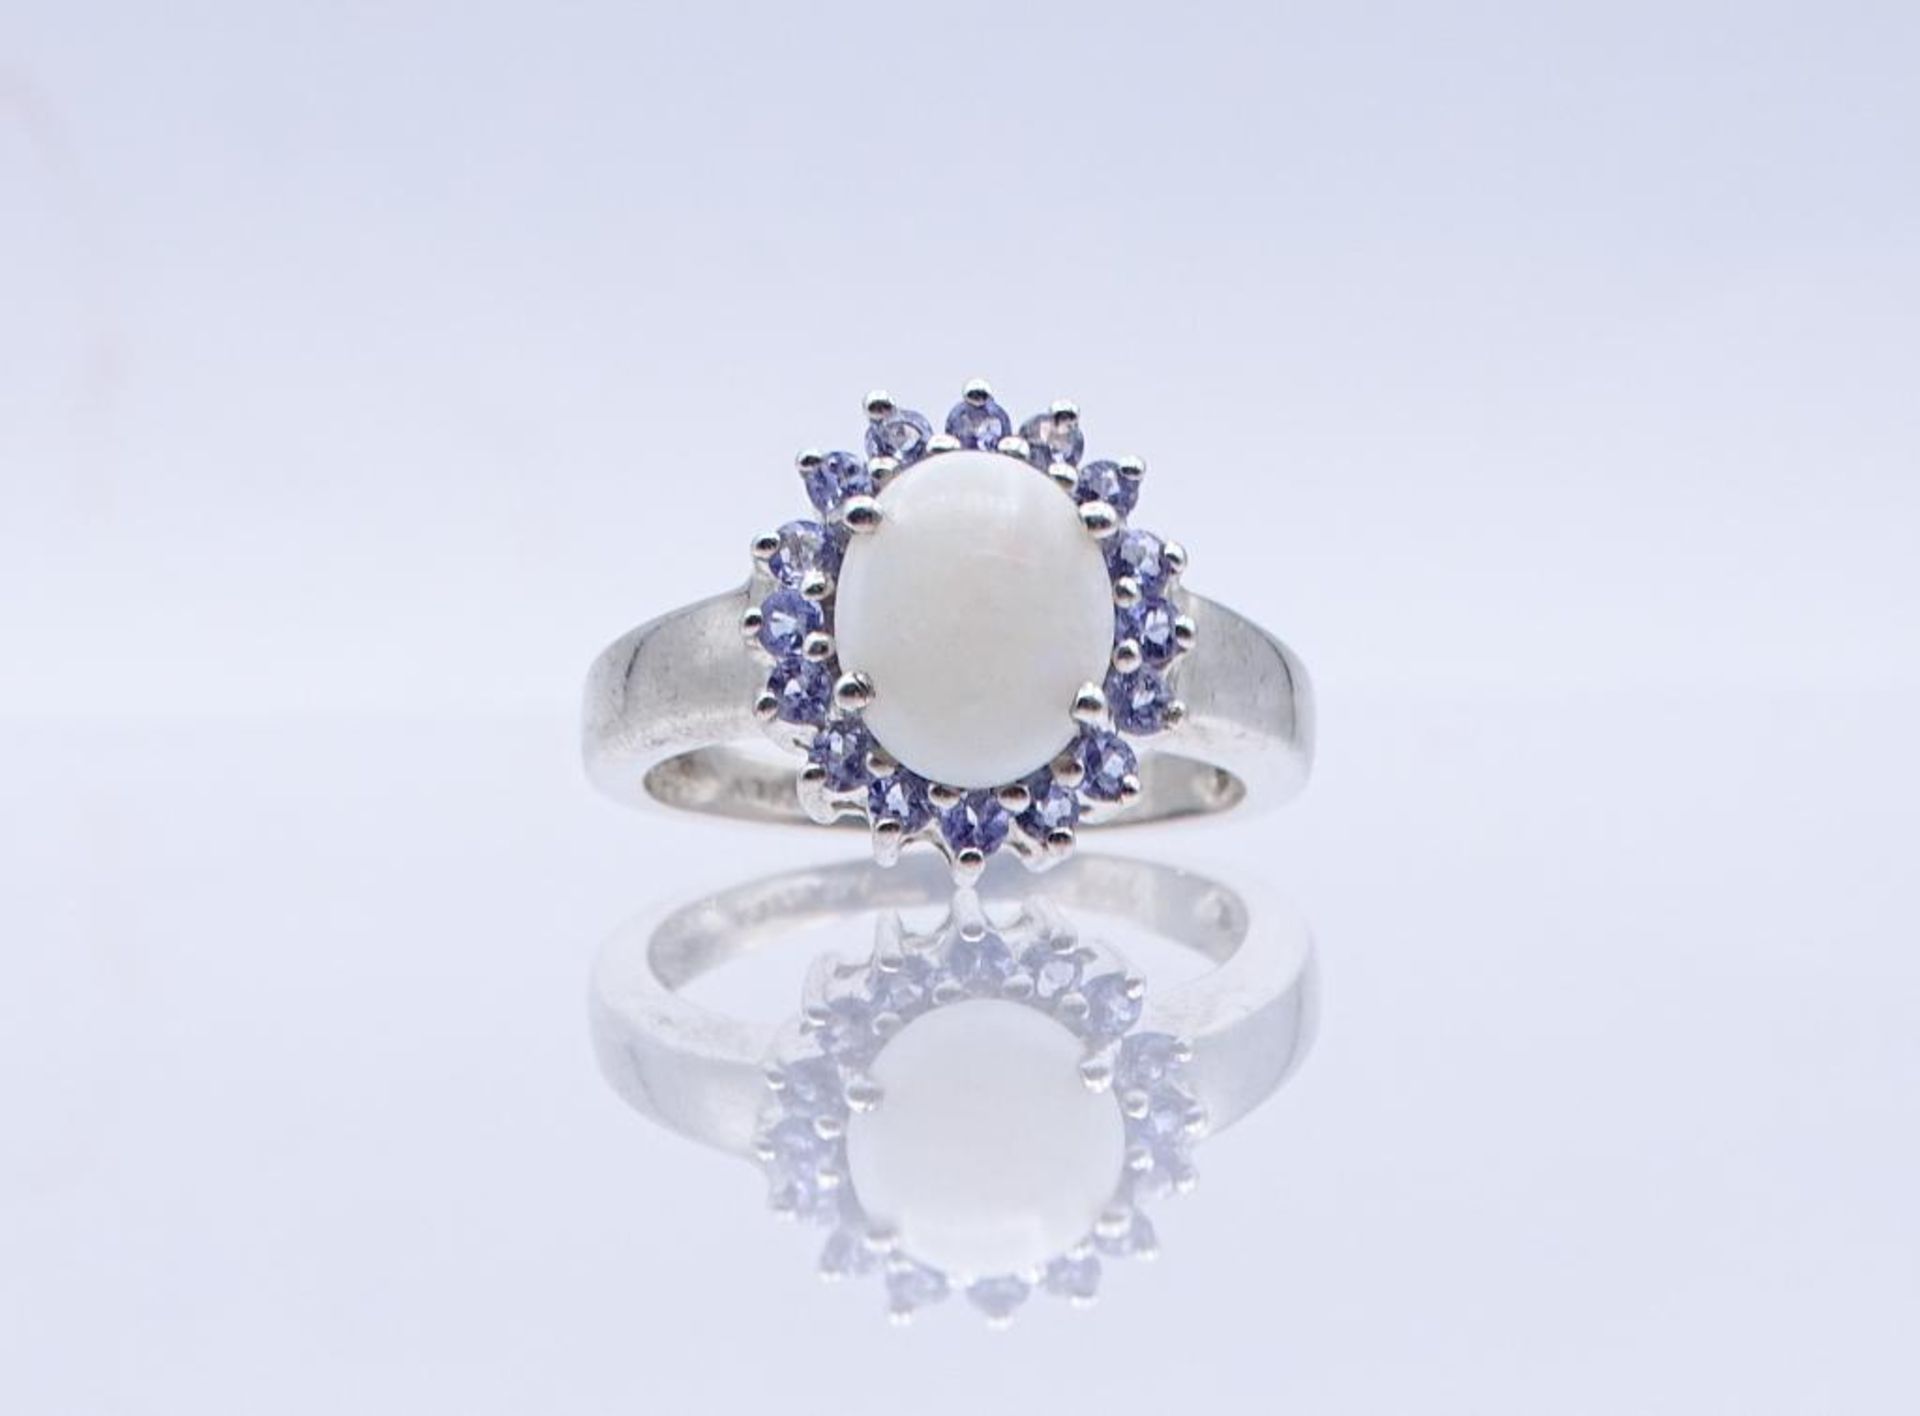 Silber Ring mit Opal und violetten facettierten Steinen, Silber 4,5gr., RG 59- - -22.61 % buyer's